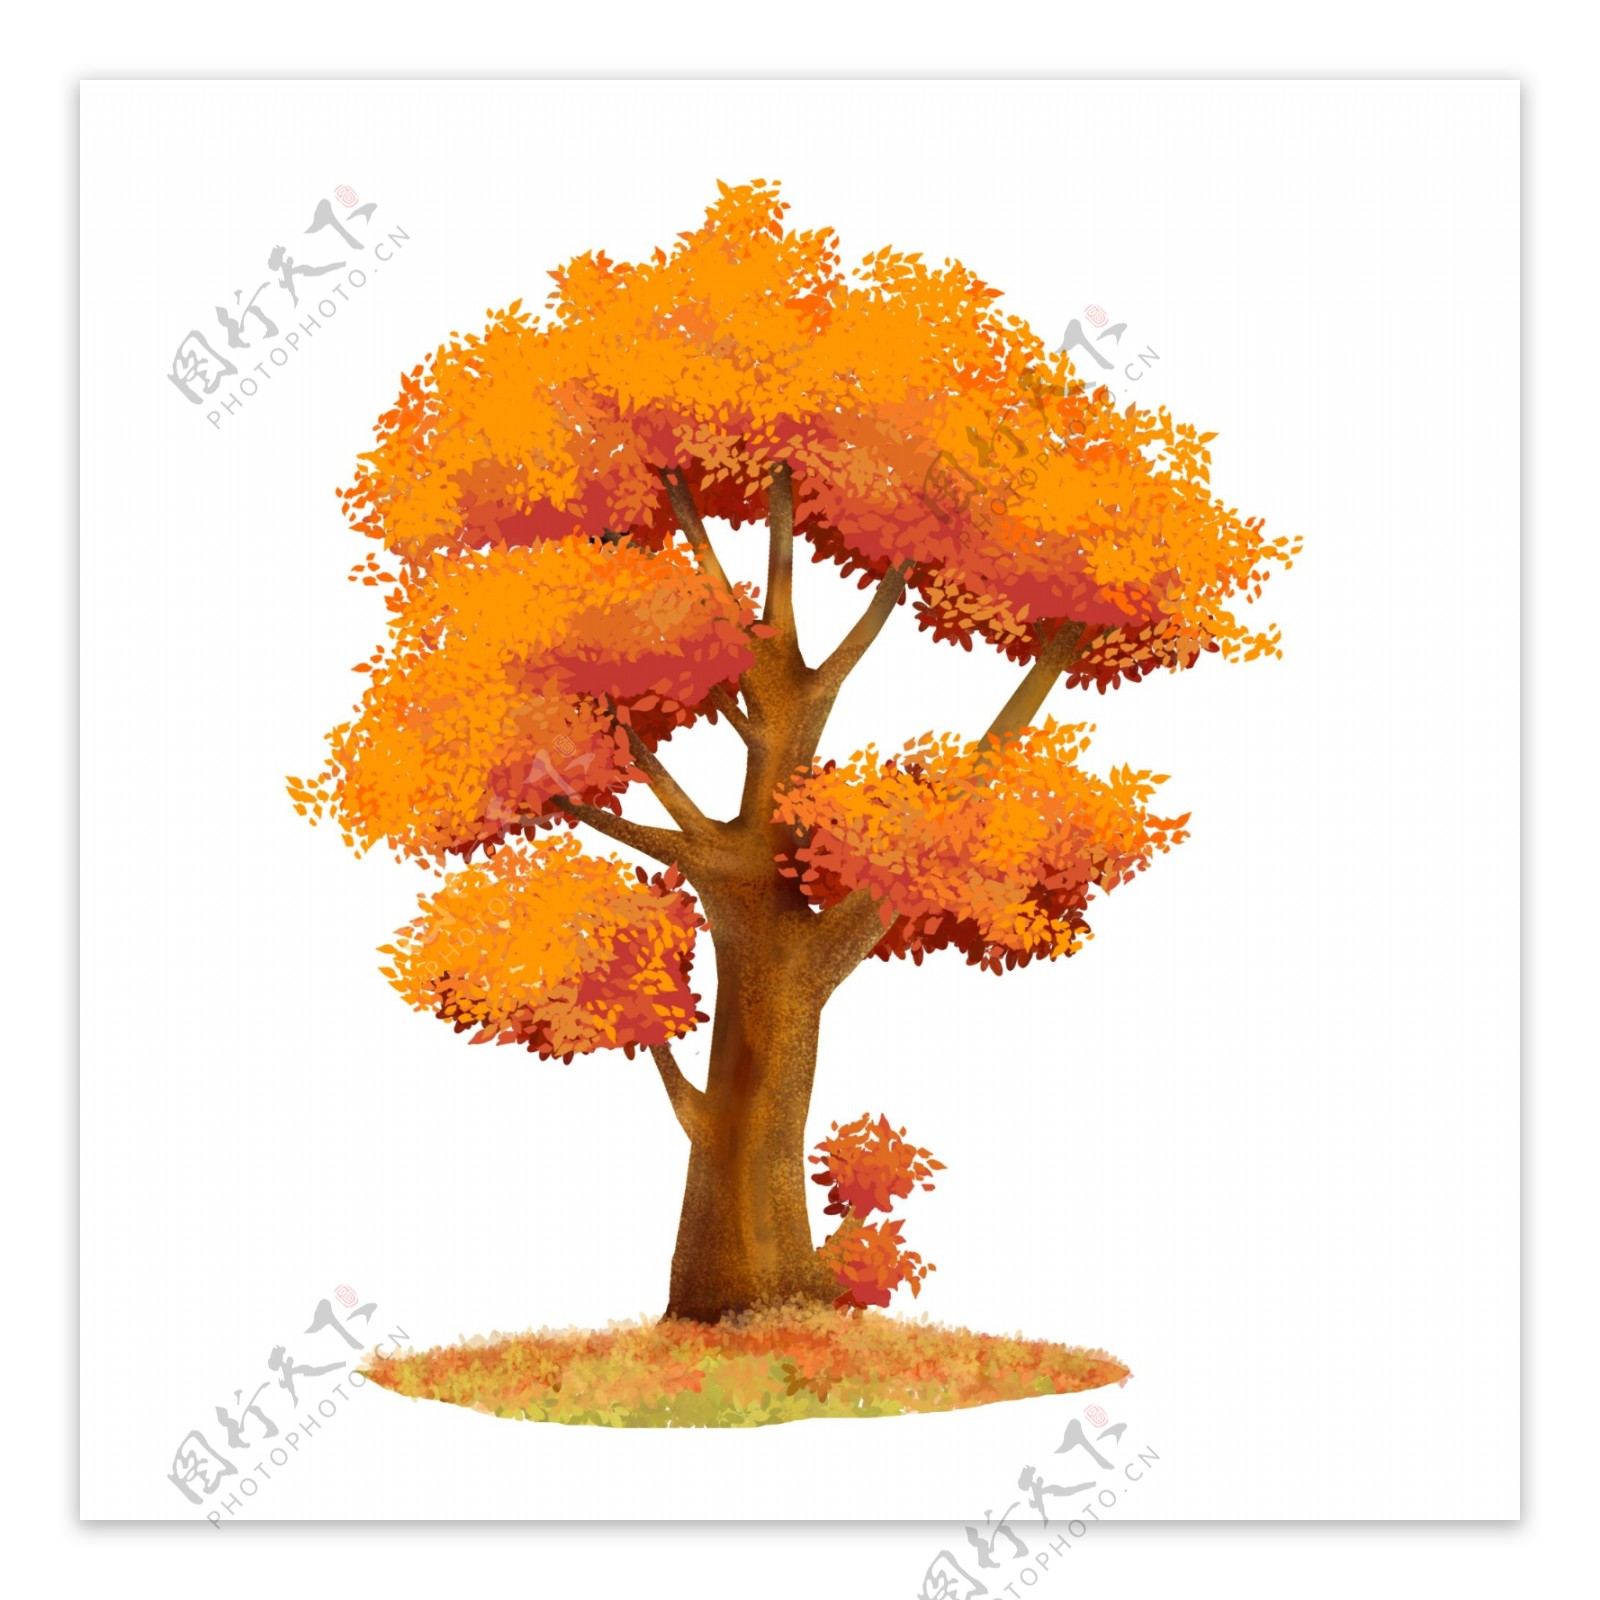 可商用高清手绘银杏树